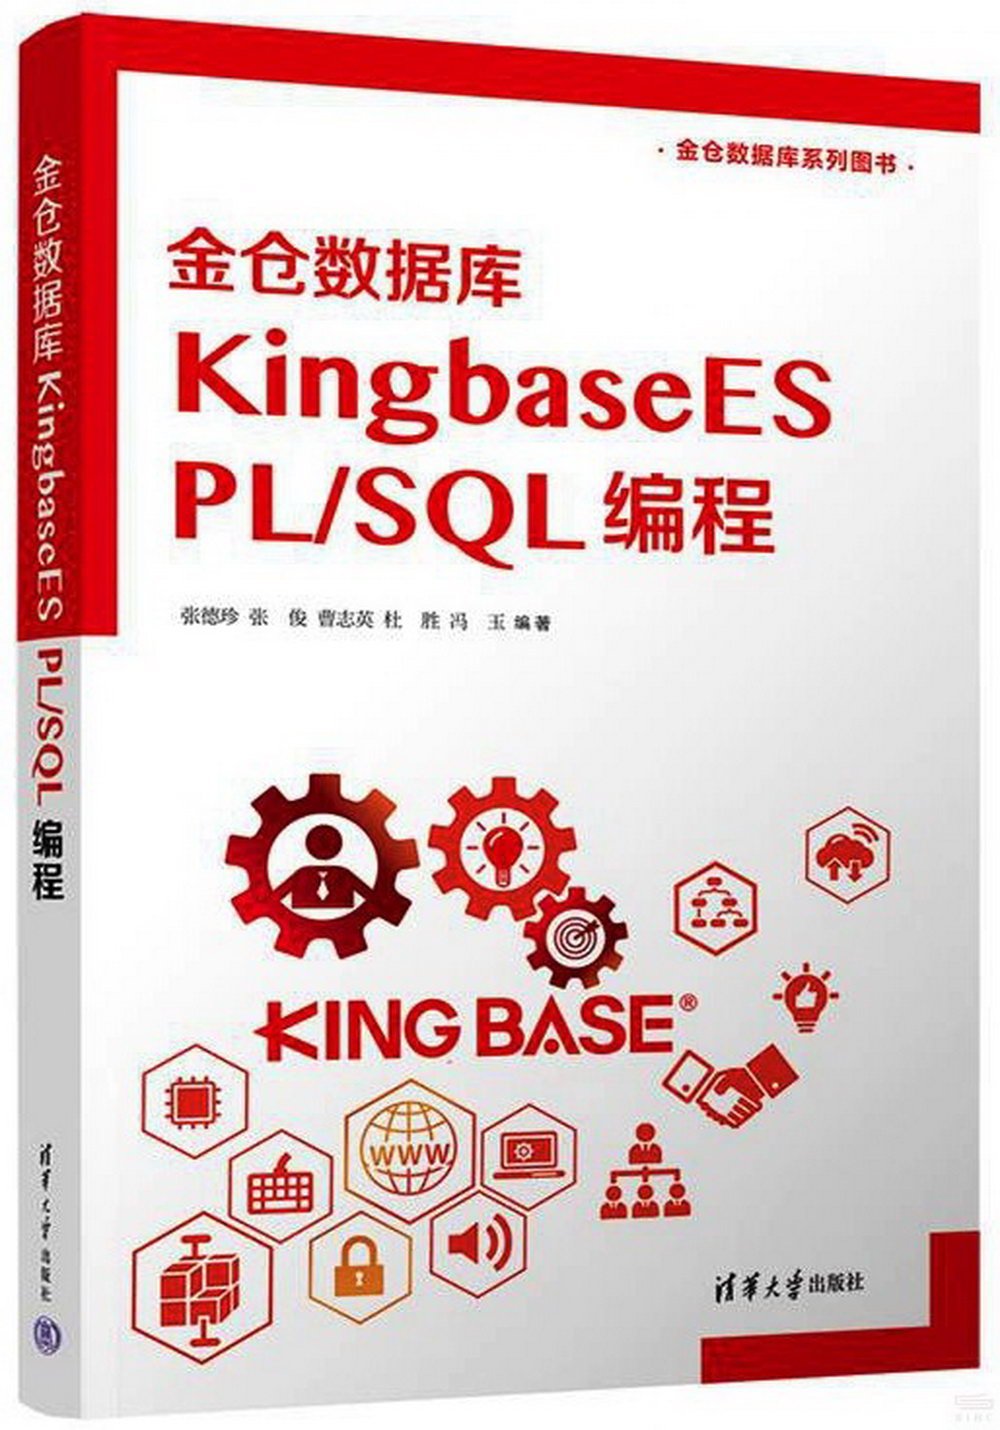 金倉數據庫KingbaseES PL/SQL 編程